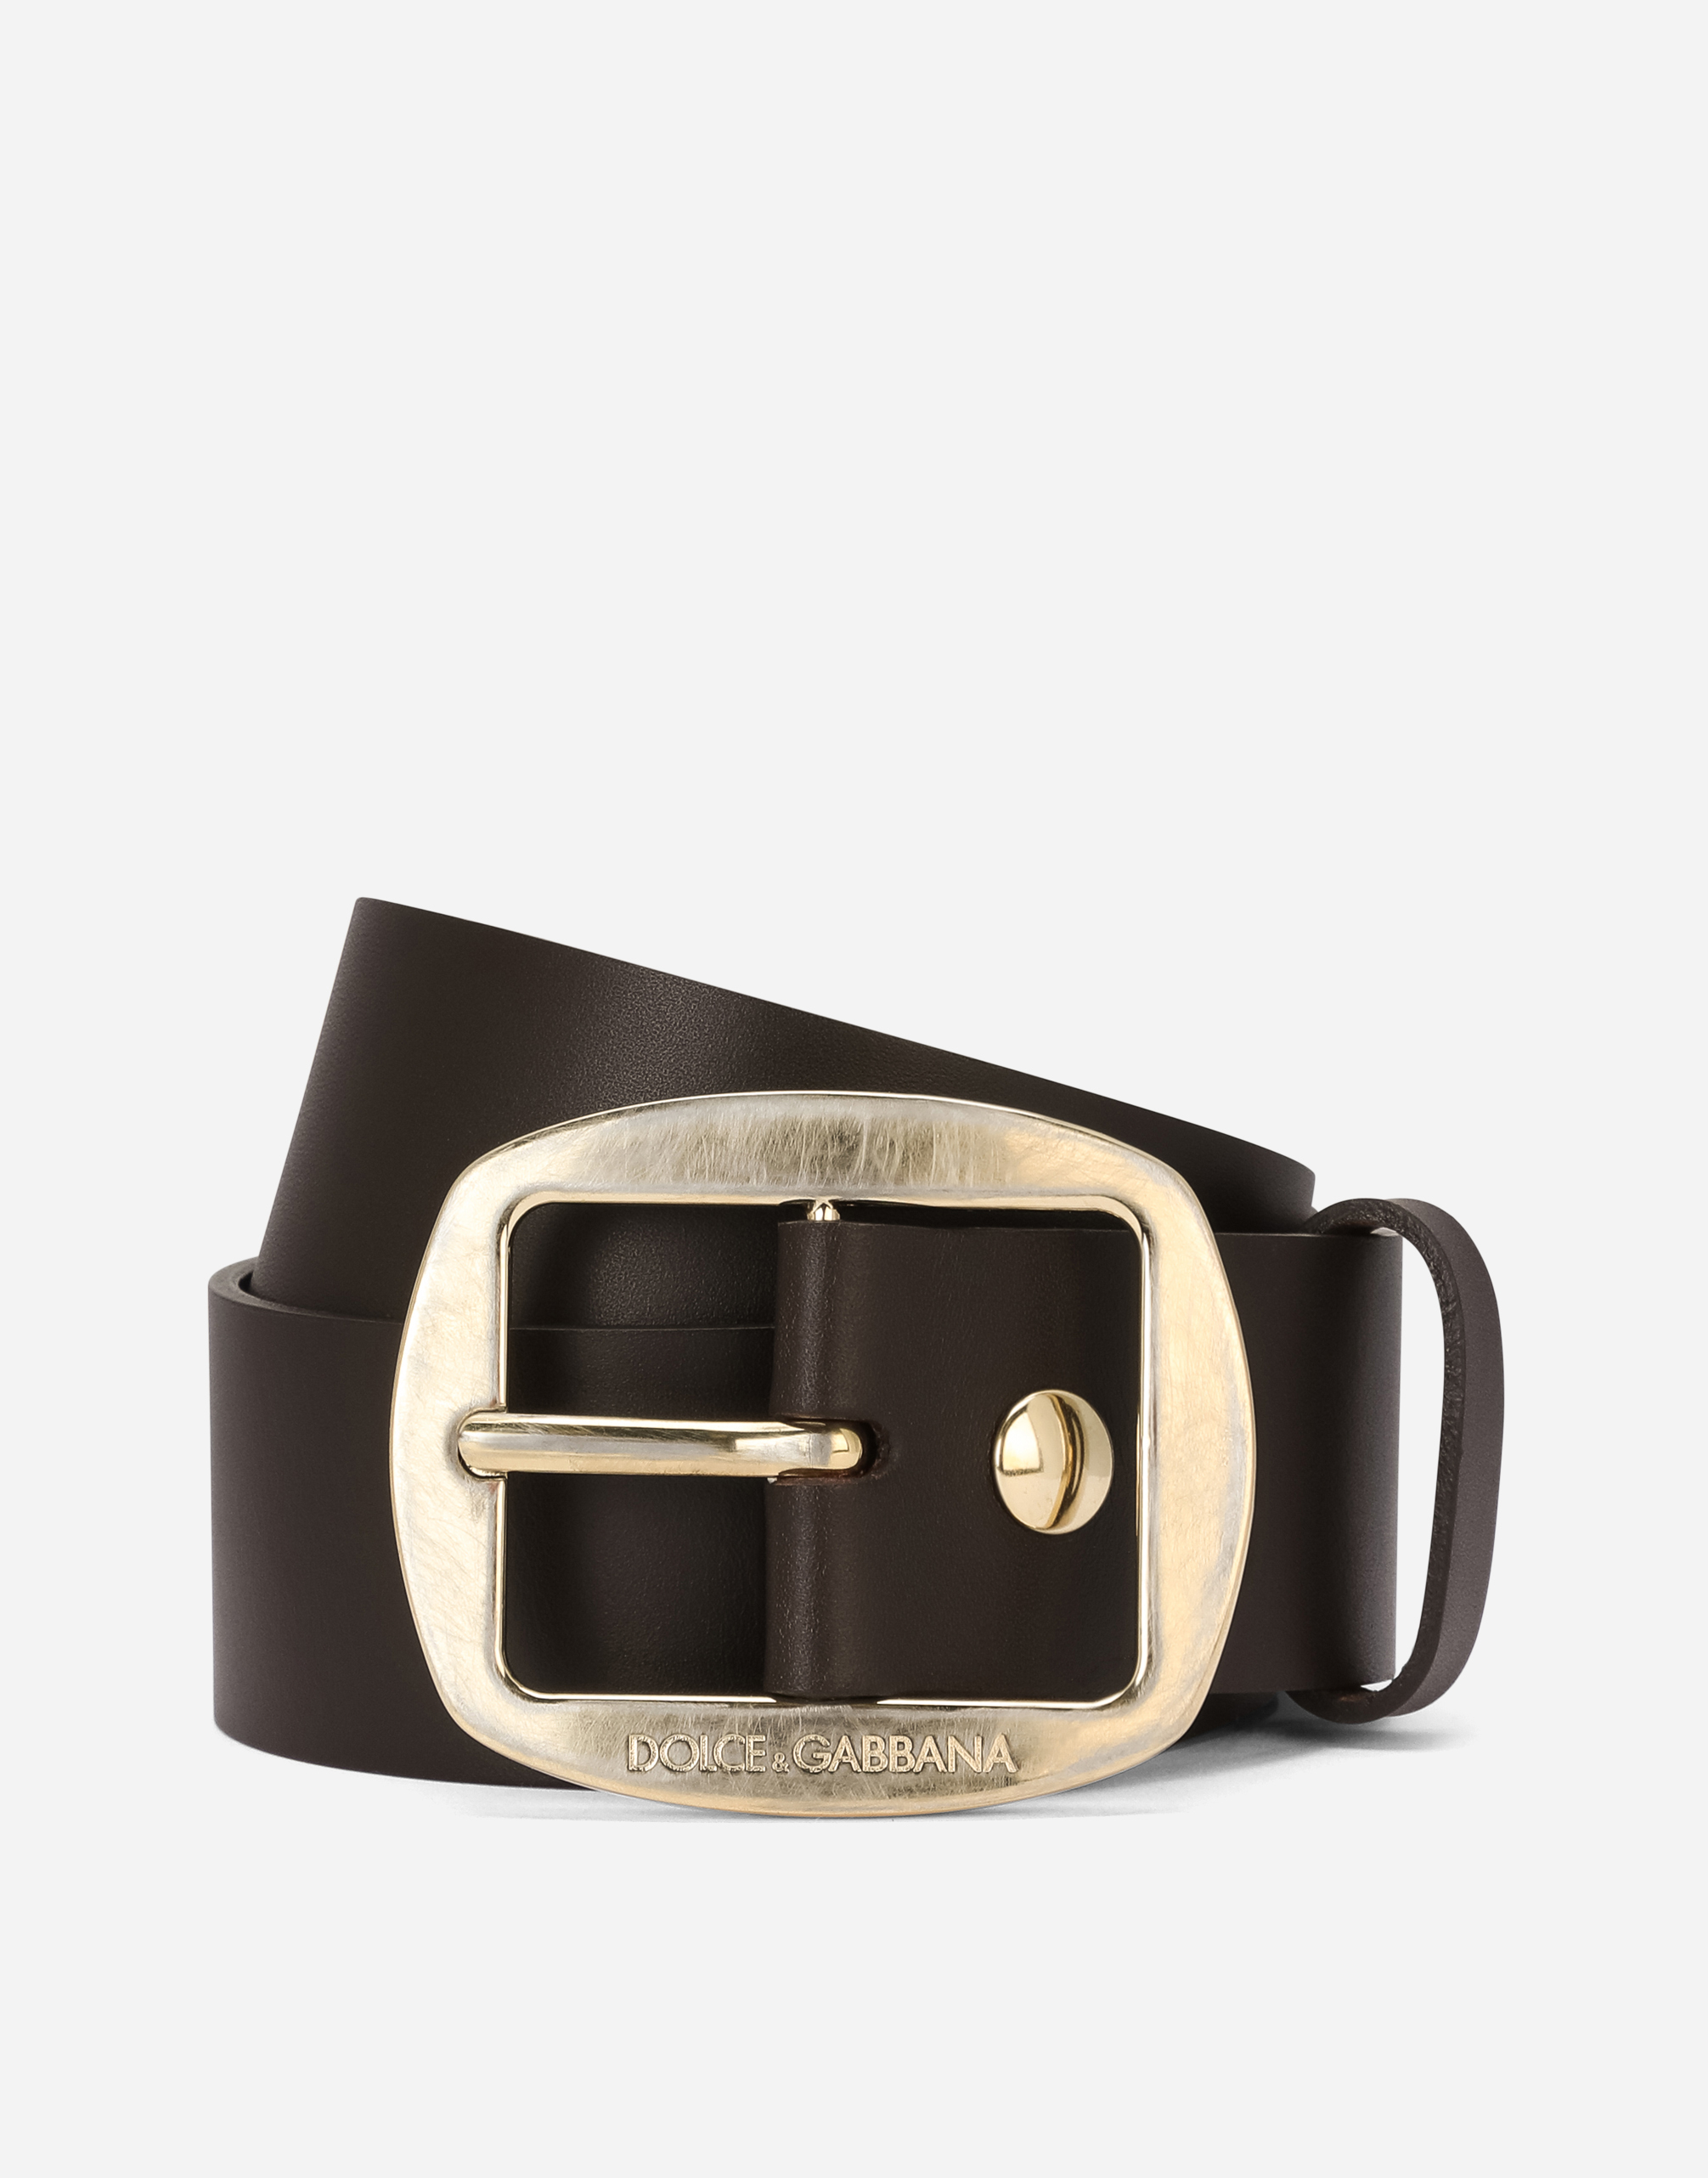 Dolce & Gabbana Calfskin Belt In Brown Lgt Gold